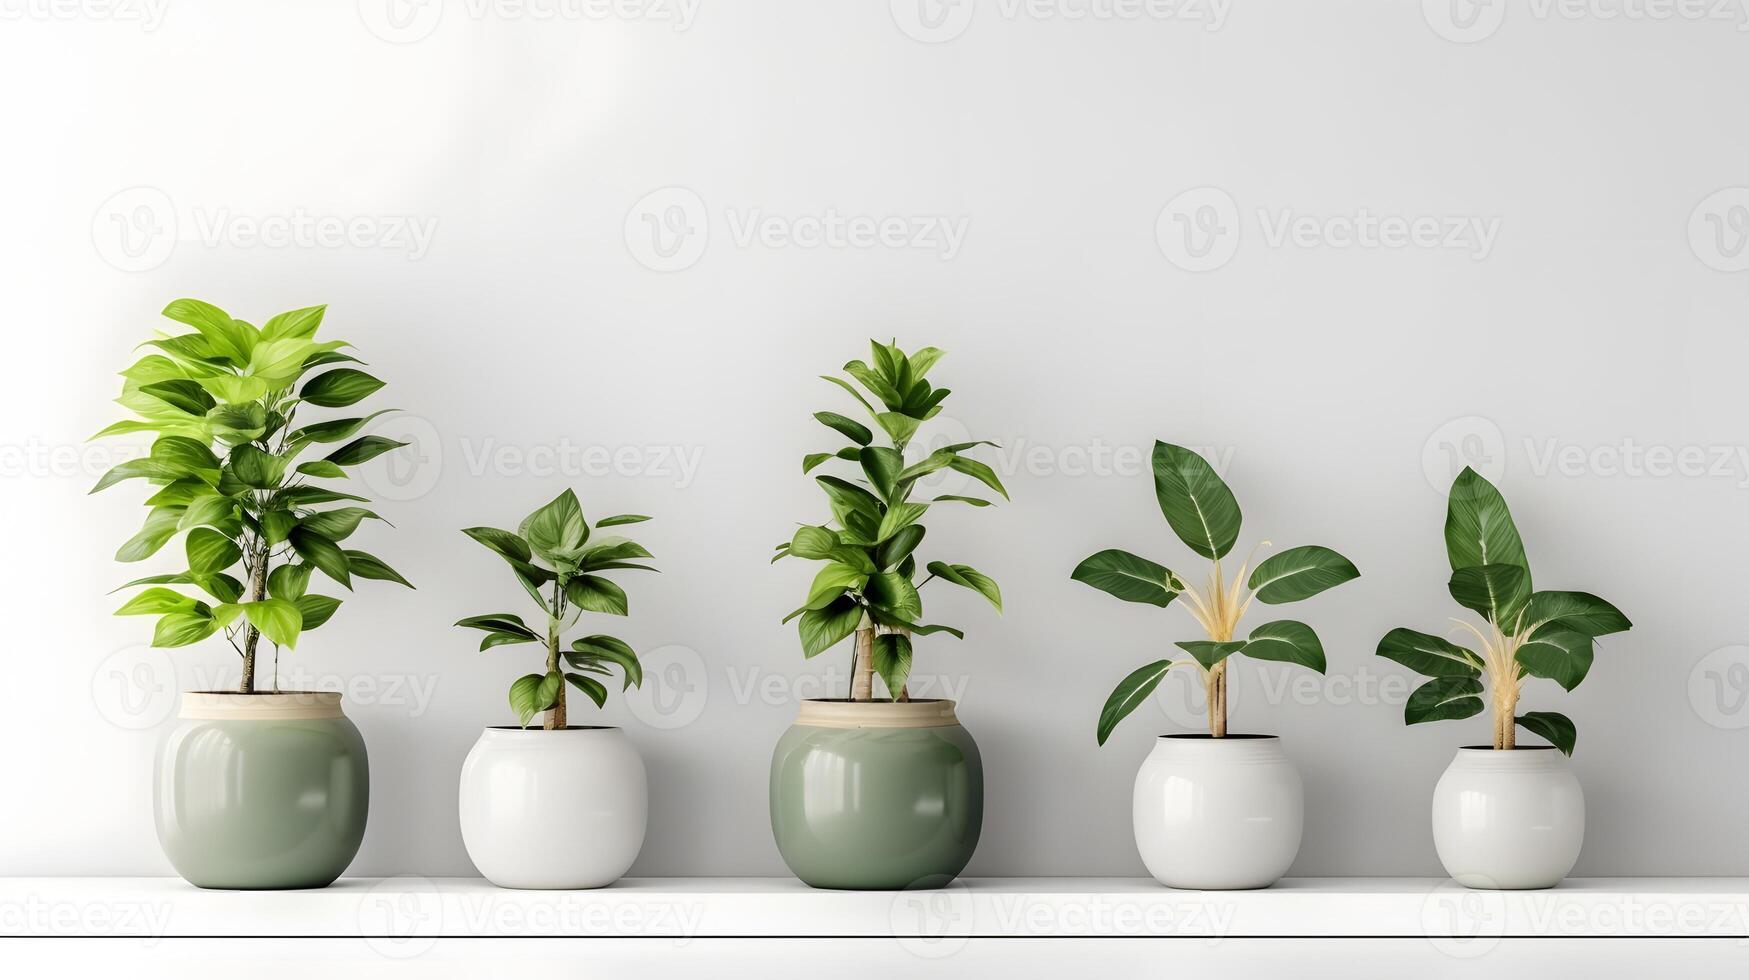 hylla med inomhus- växter i en vit pott på en vit bakgrund foto